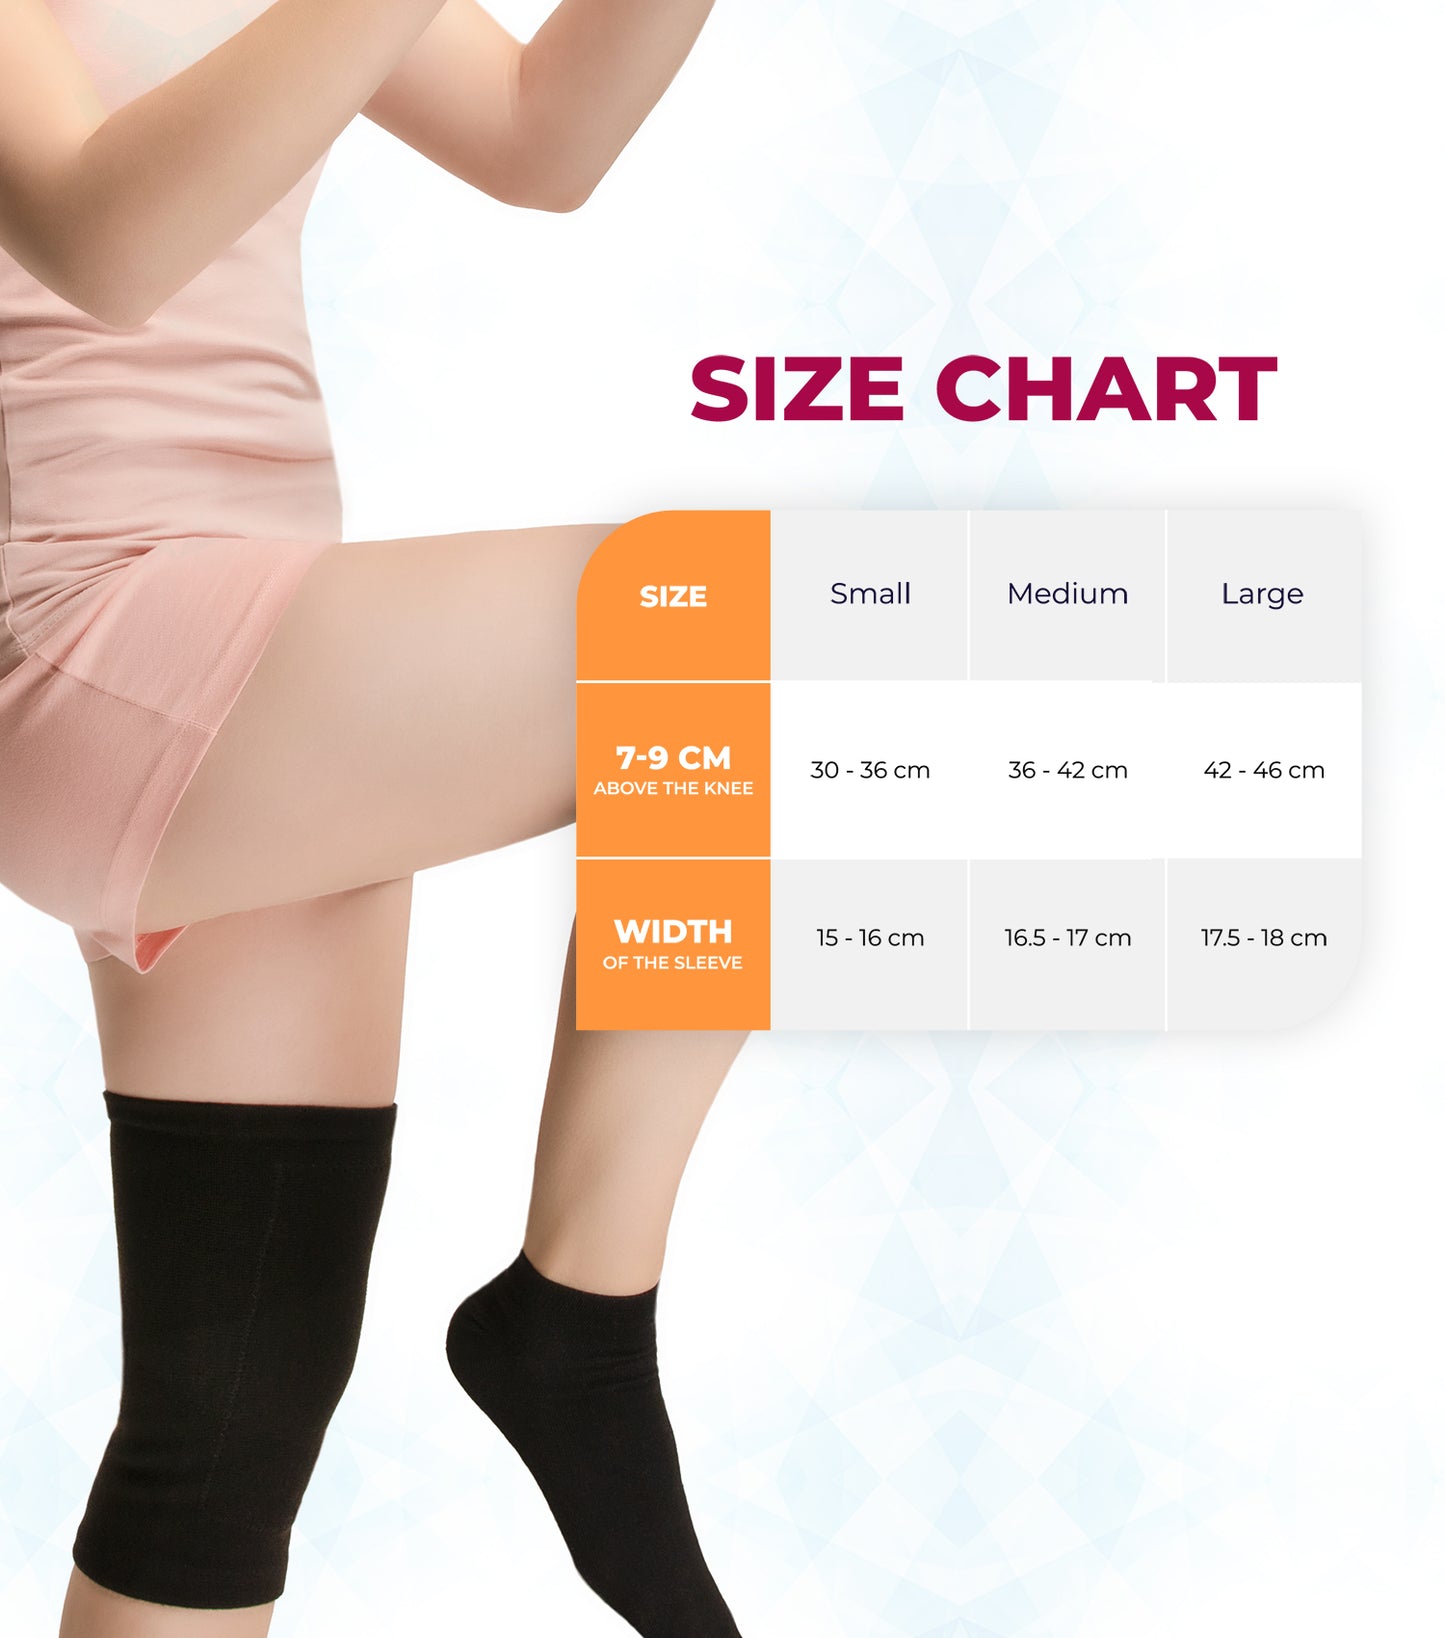 SNUG360™ Wool Knee Warmer Sleeves